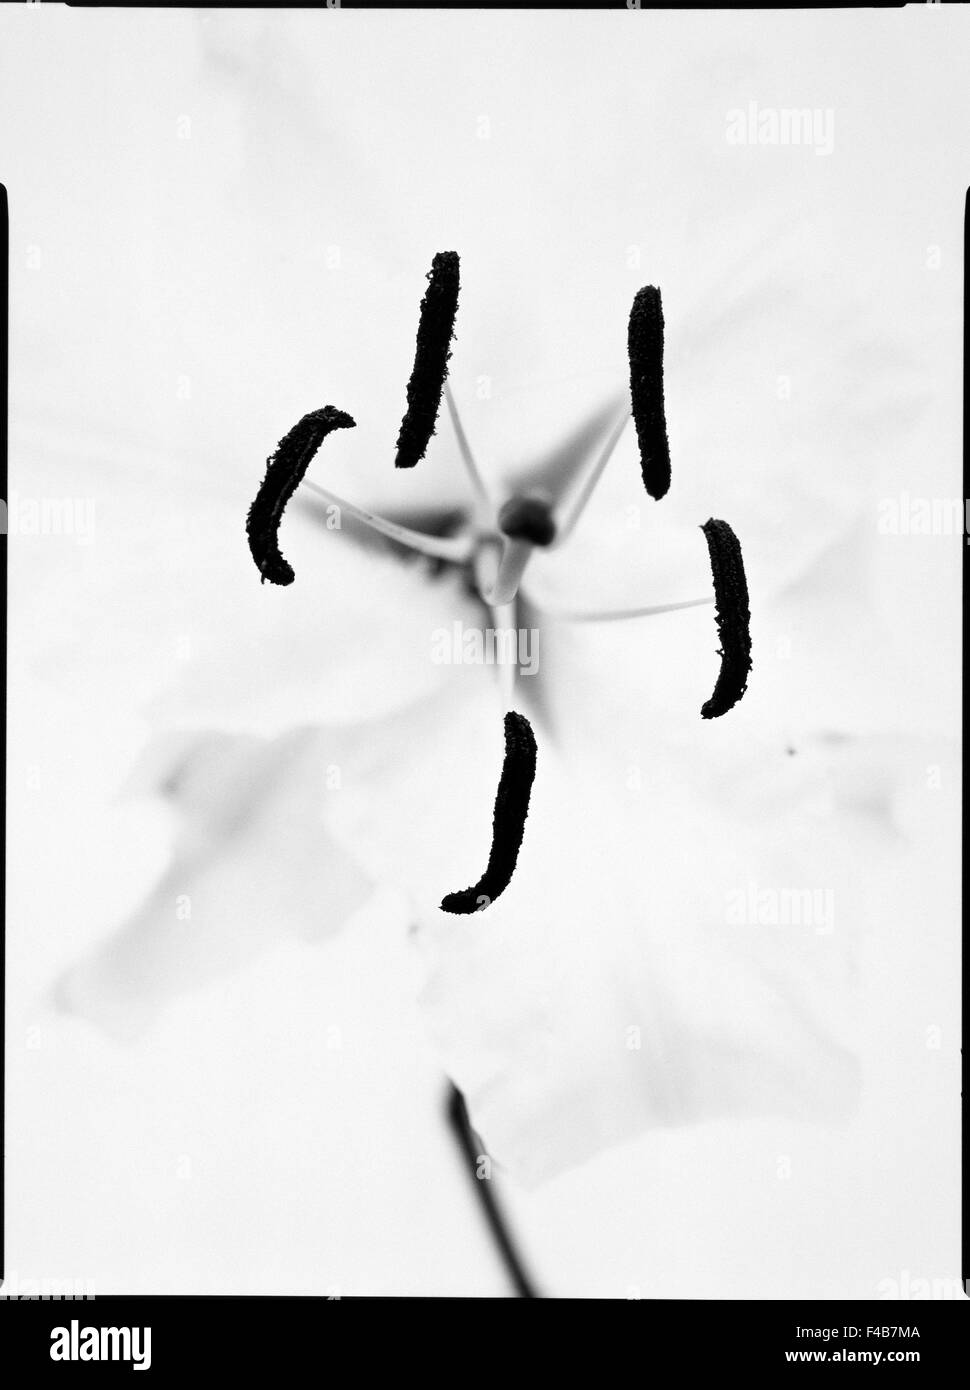 Abstract di nero nero e bianco catalogo 2 close-up dettaglio contrasto fiore illusione immaginazione ispirazione piante semplicità Foto Stock